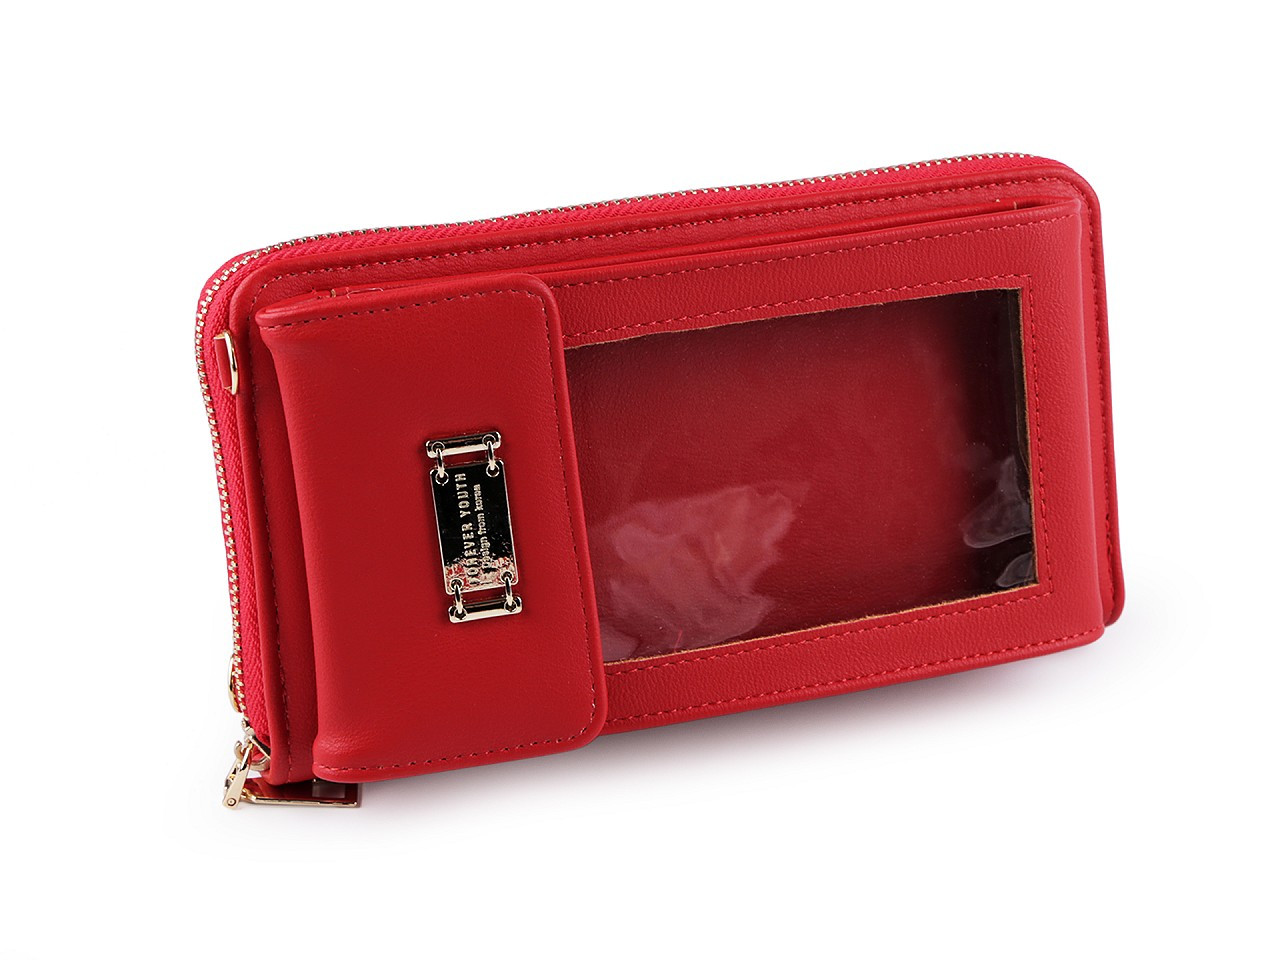 Peněženka s pouzdrem na mobil 11x19 cm, barva 2 červená